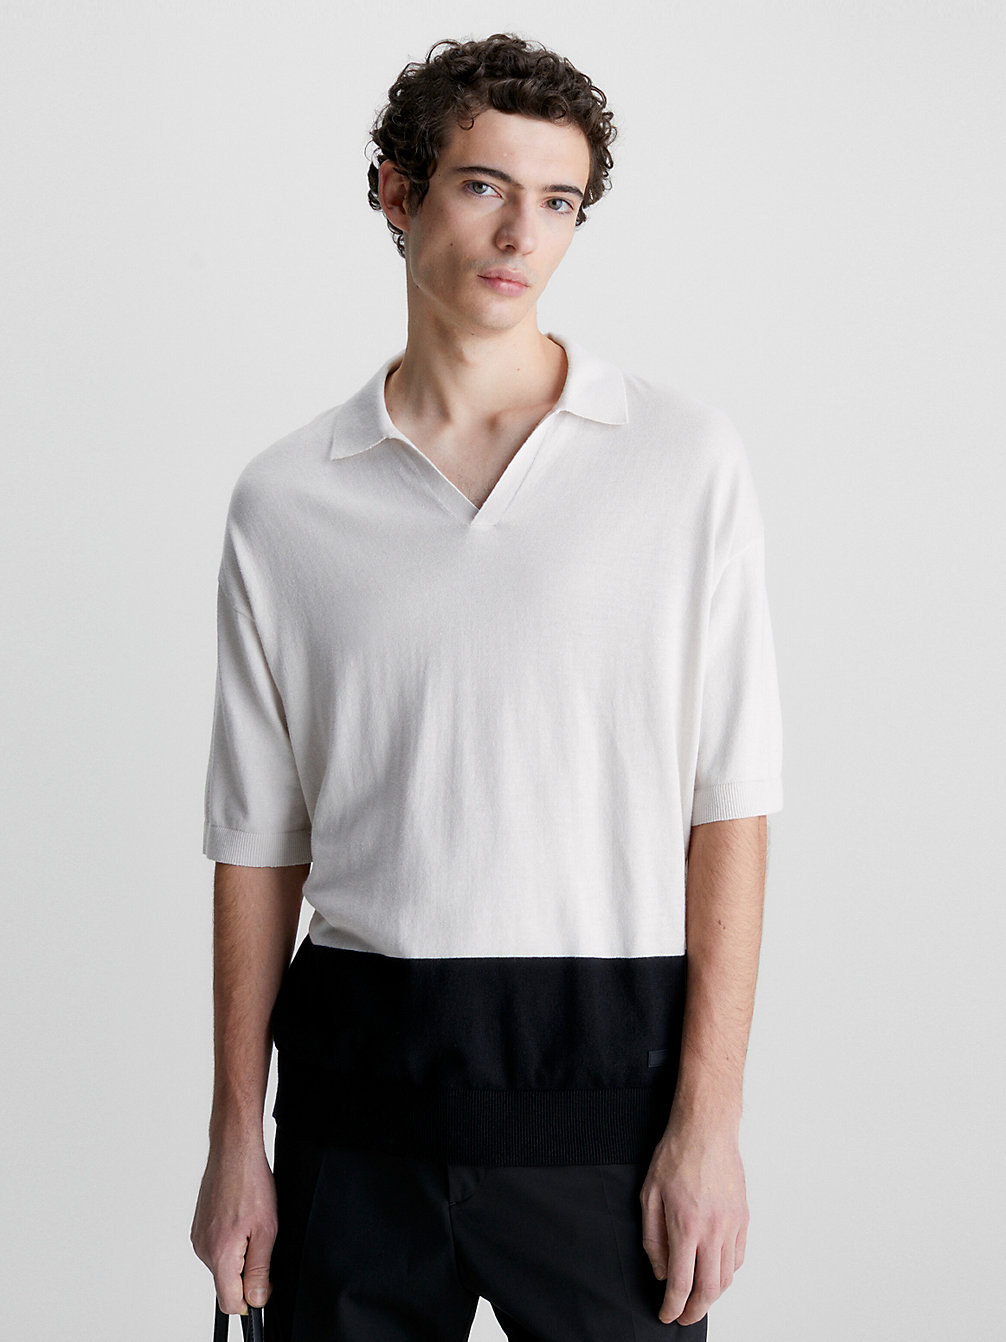 STONY BEIGE HEATHER Poloshirt Im Blockfarben-Design Aus Recyceltem Material undefined Herren Calvin Klein